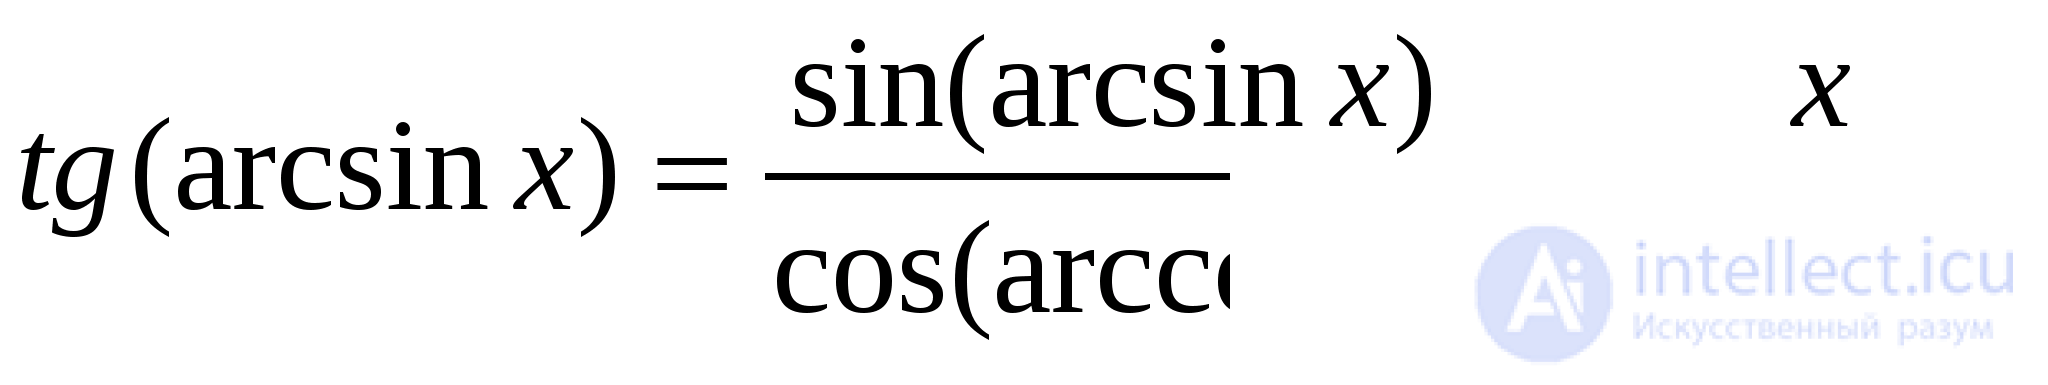 Обратные тригонометрические функции ,арксинус, арккосинус,   арктангенс ,  арккотангенс ,  арксеканс, арккосеканс применение и примеры